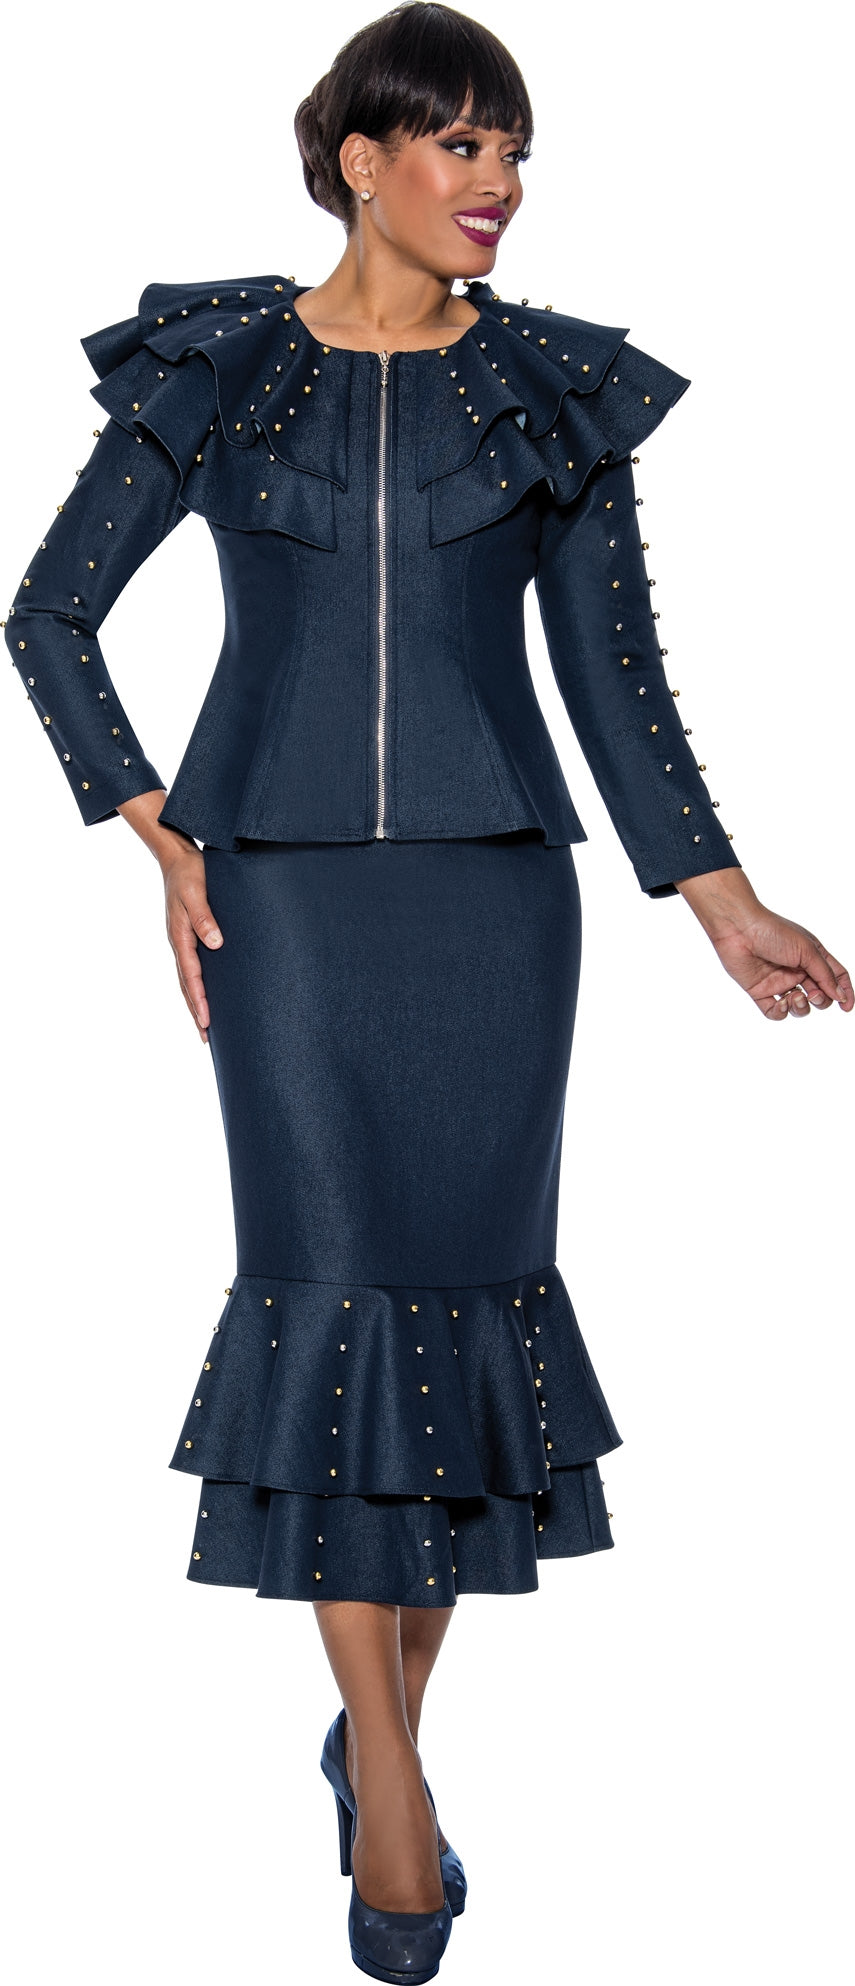 Devine Sport Denim Skirt Suit 63912 - Church Suits For Less